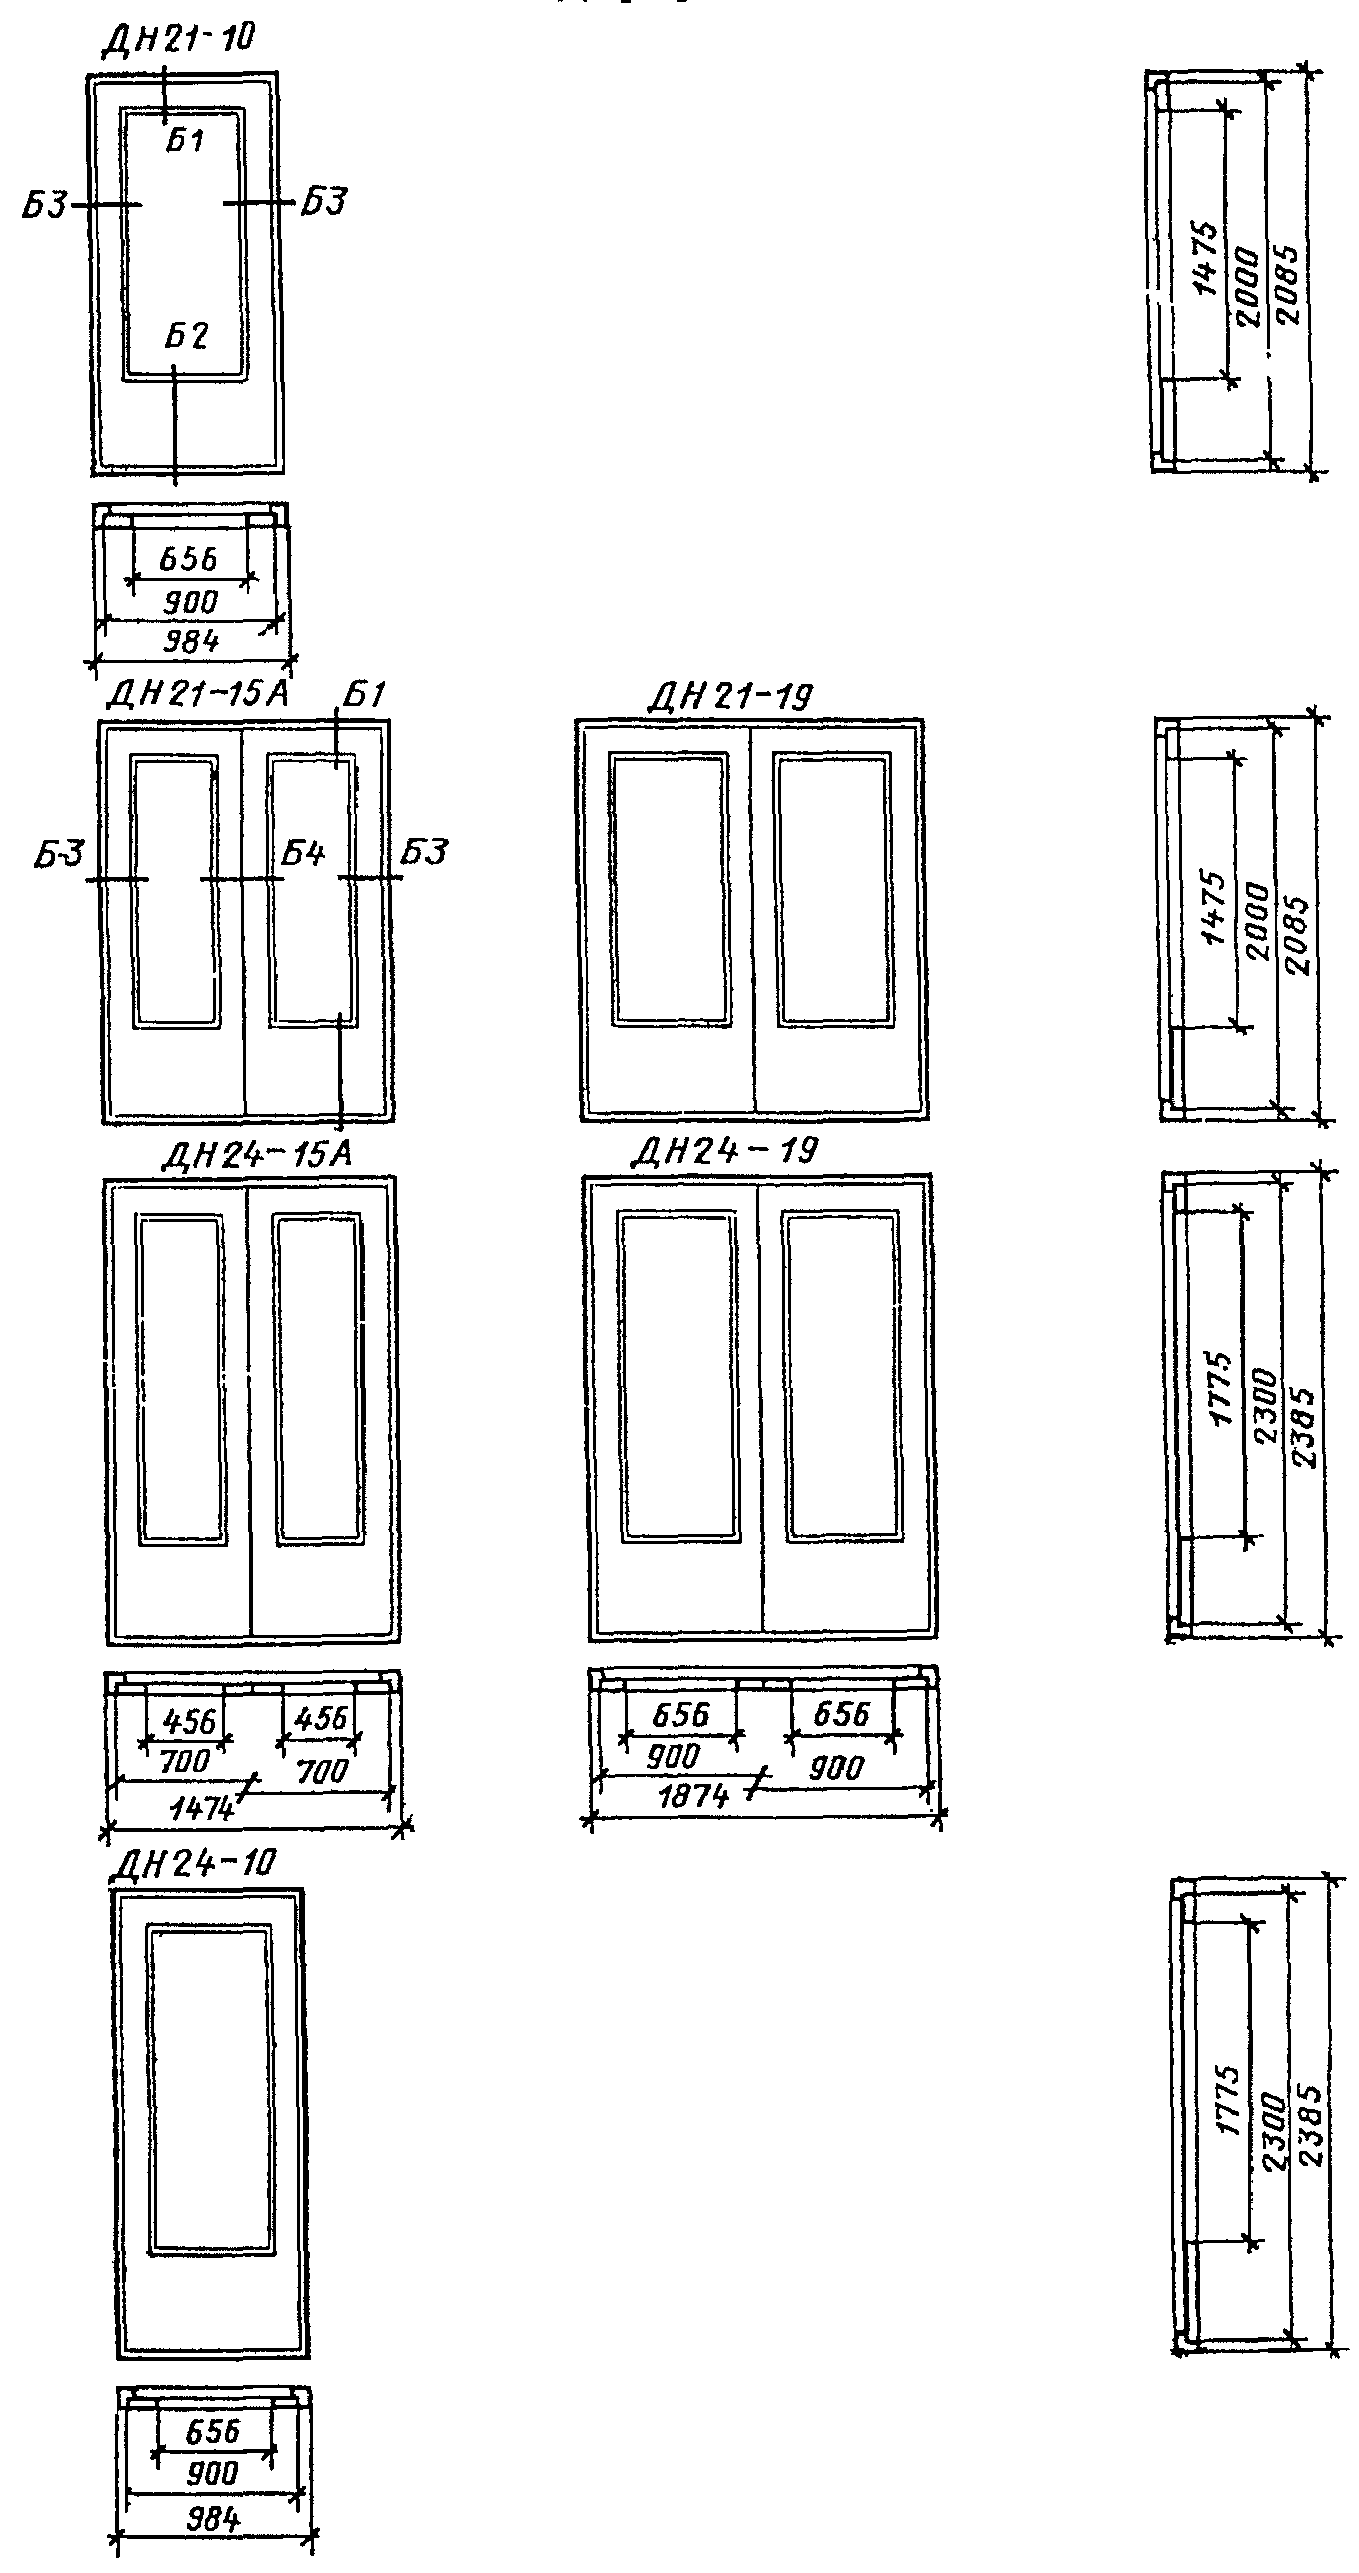 Размеры дверей в жилом доме. Дверные блоки деревянные ГОСТ 475-2016. ГОСТ 24698-81 двери. Дверной блок ДГ 21-10 размер полотна. Дн 24-10 дверной блок.